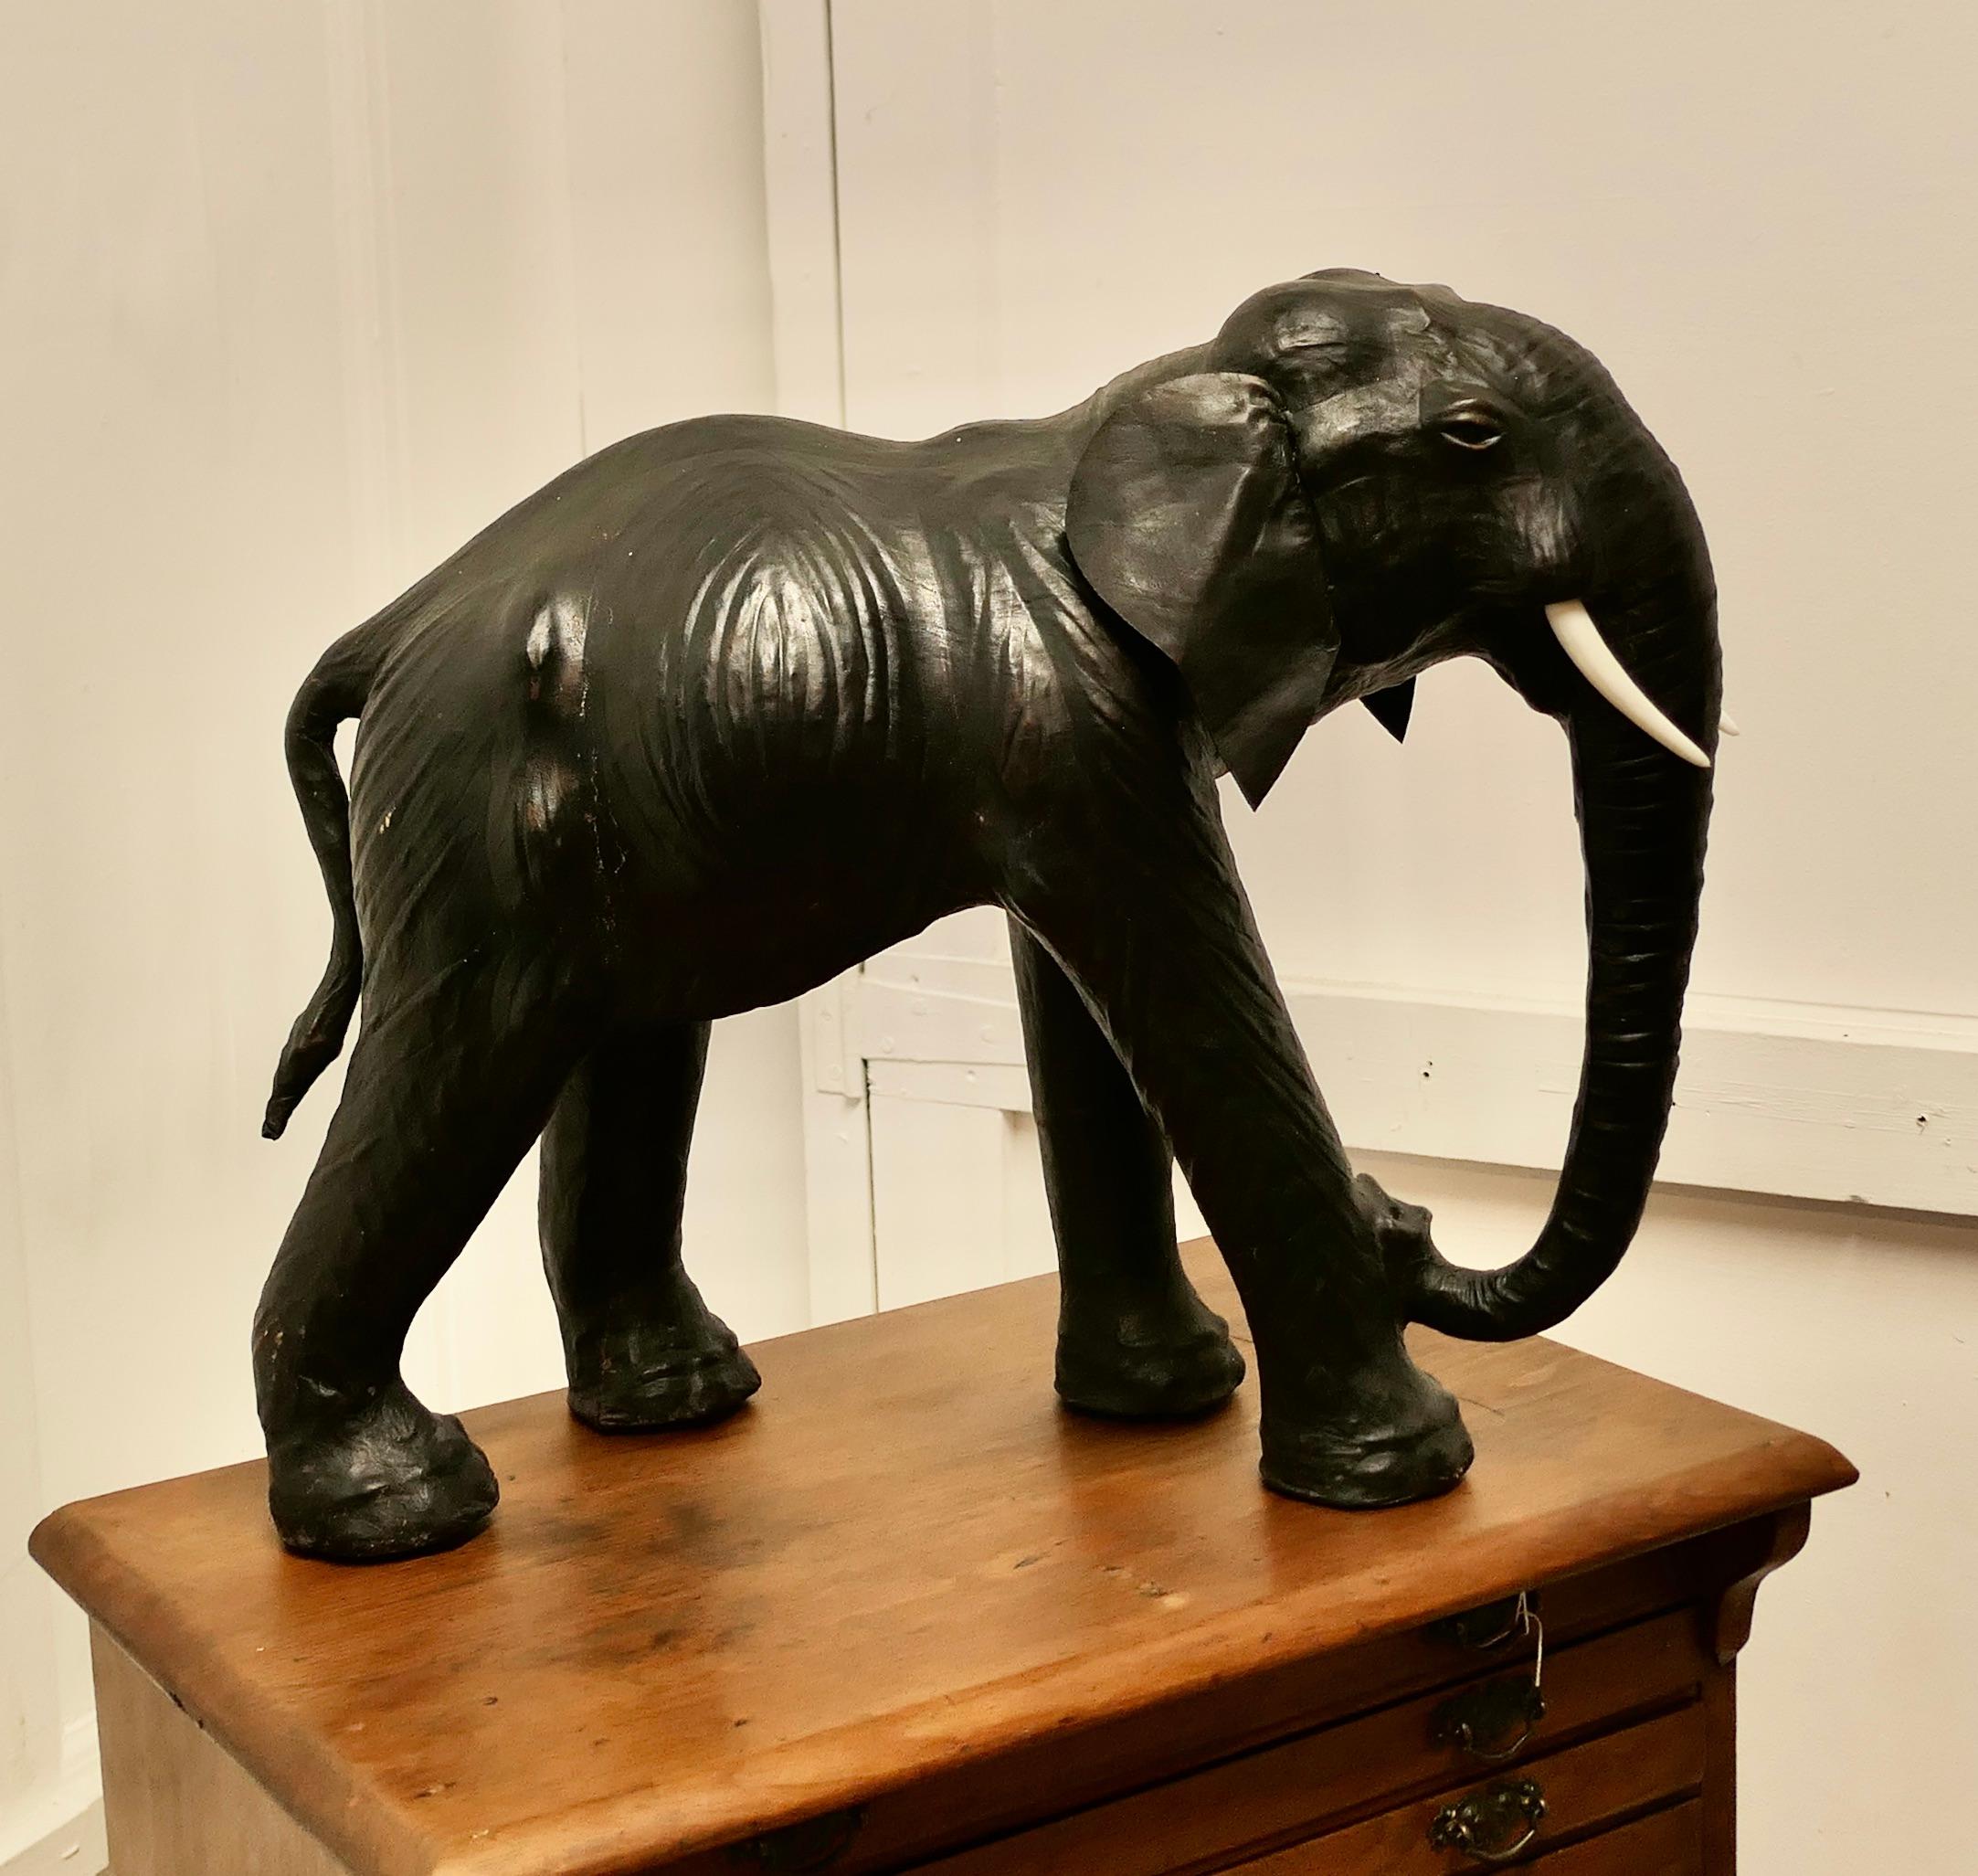 Kunsthandwerkliches Ledermodell eines Elefantenbullen 

Dies ist ein schöner Fund aus dem frühen 20. Jahrhundert, er wurde für Liberty hergestellt und ist bekannt als 